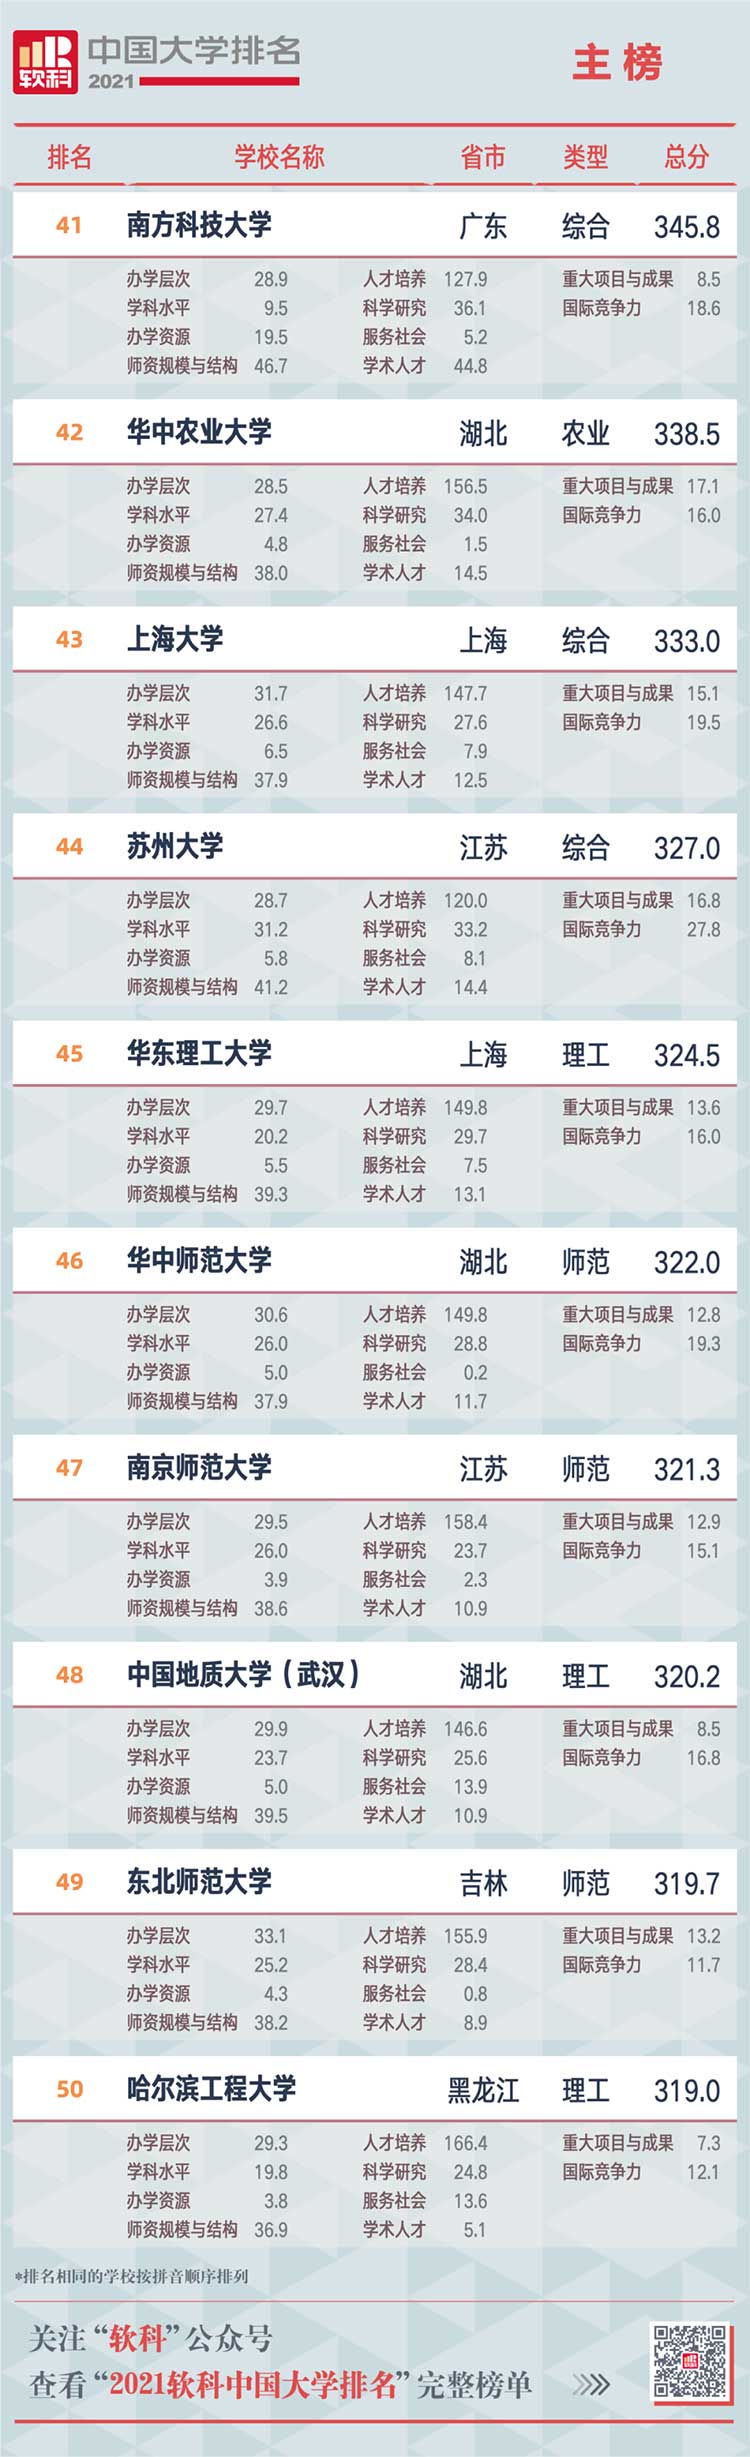 中国大学排名2019排行_2021最新中国大学排名:浙大第3,复旦第8,川大吉大爆冷进前10